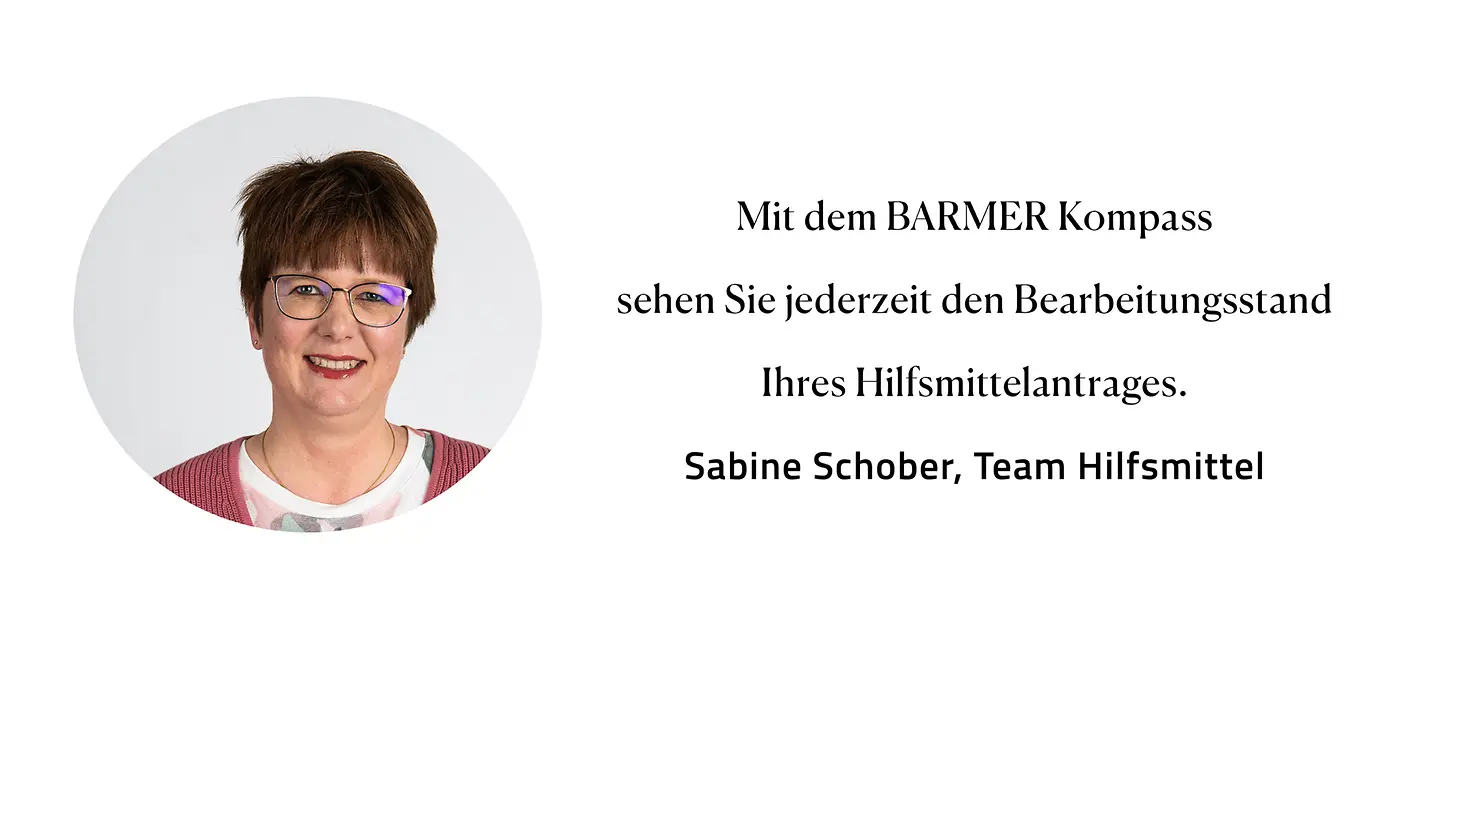 Zitat Sabine Schober, Team Hilfsmittel: "Mit dem Barmer Kompass sehen Sie jederzeit den Bearbeitungsstand Ihres Hilfsmittelantrages."